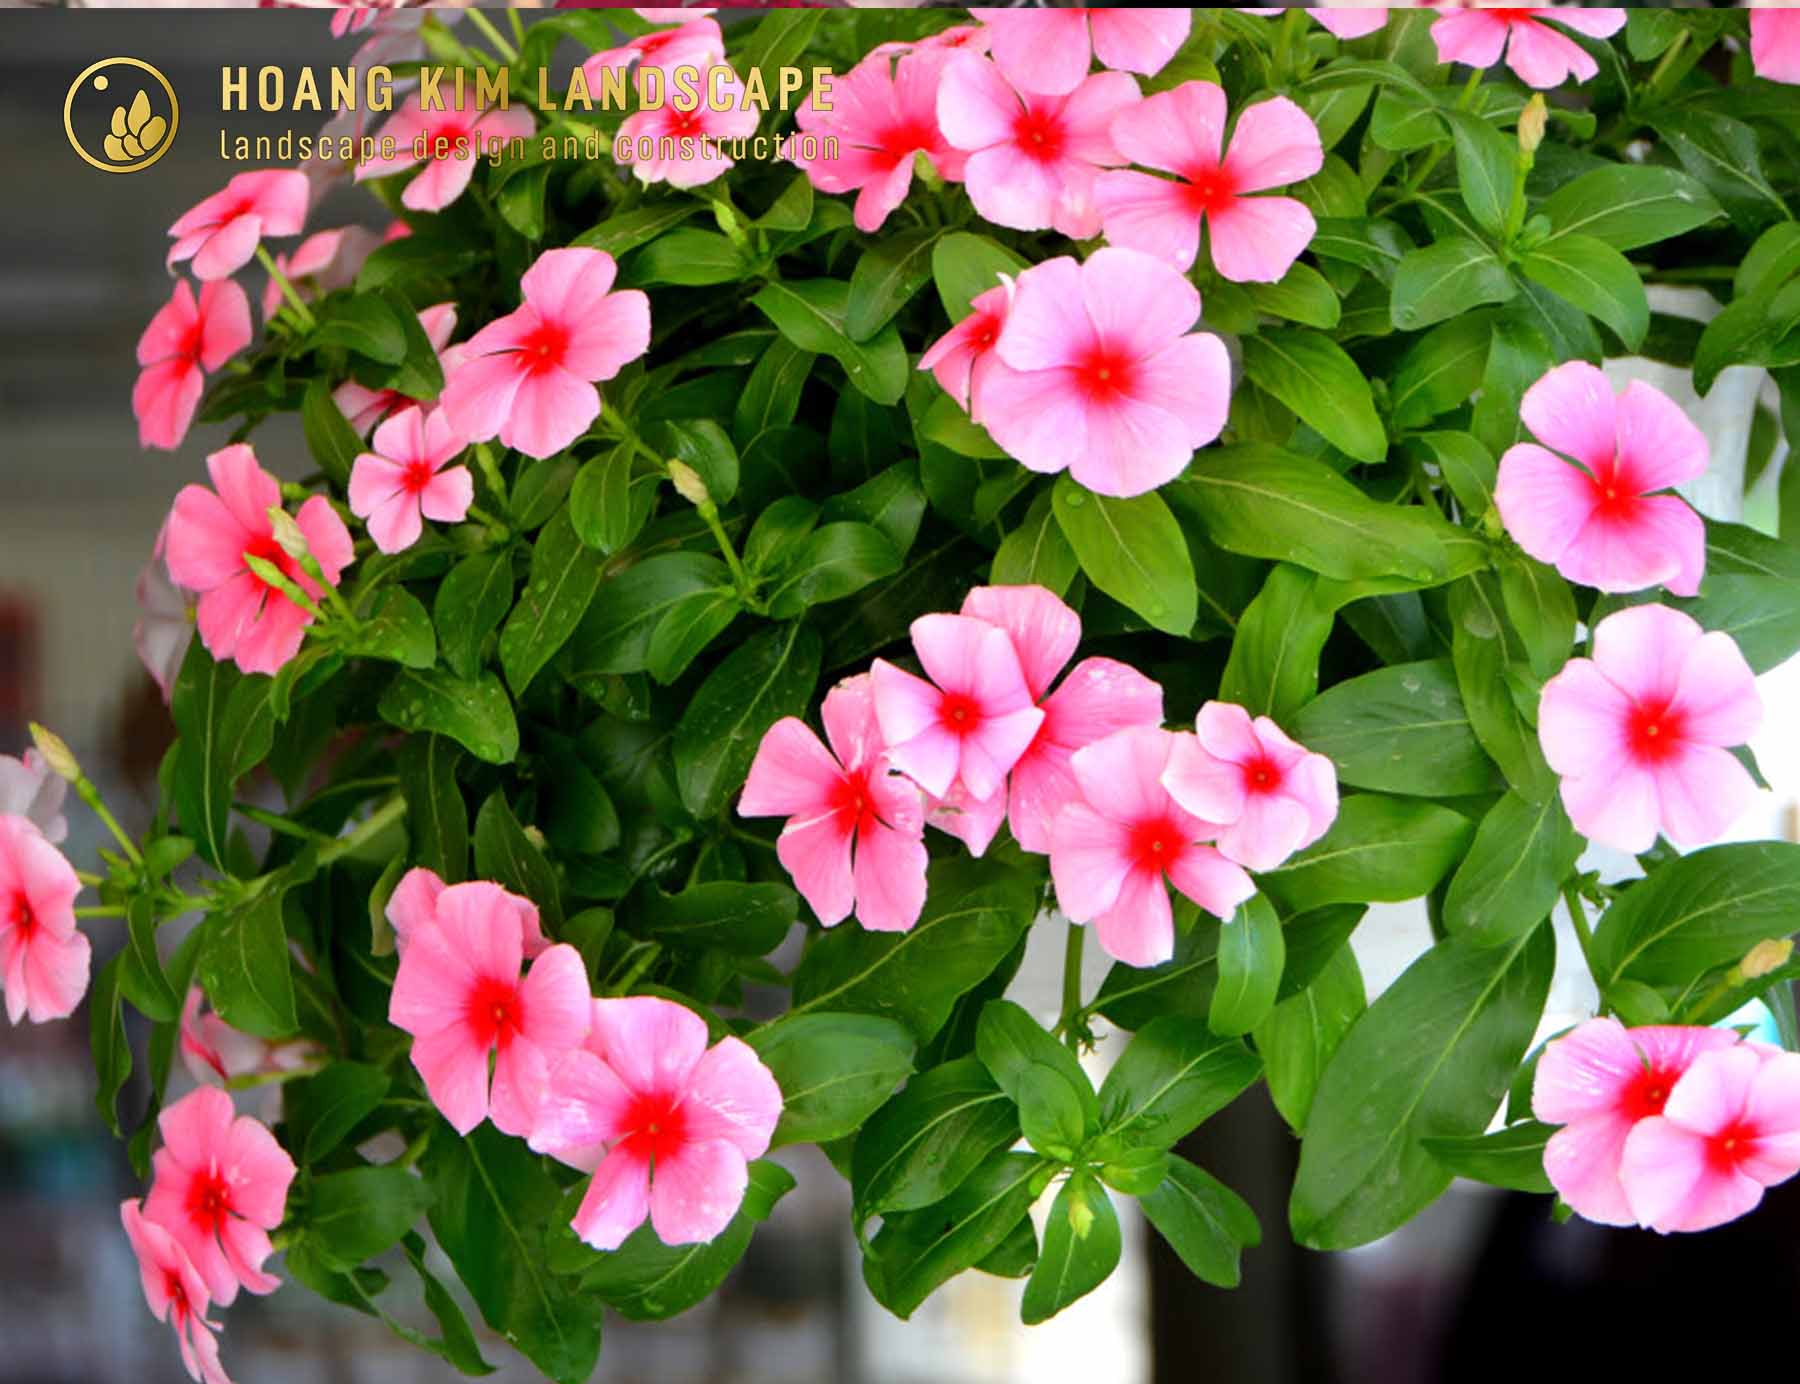 Hoa Dừa Cạn là loài hoa đẹp cả thân lá với nhiều sắc hoa rực rỡ, lá xanh mỡ màng đầy sức sống